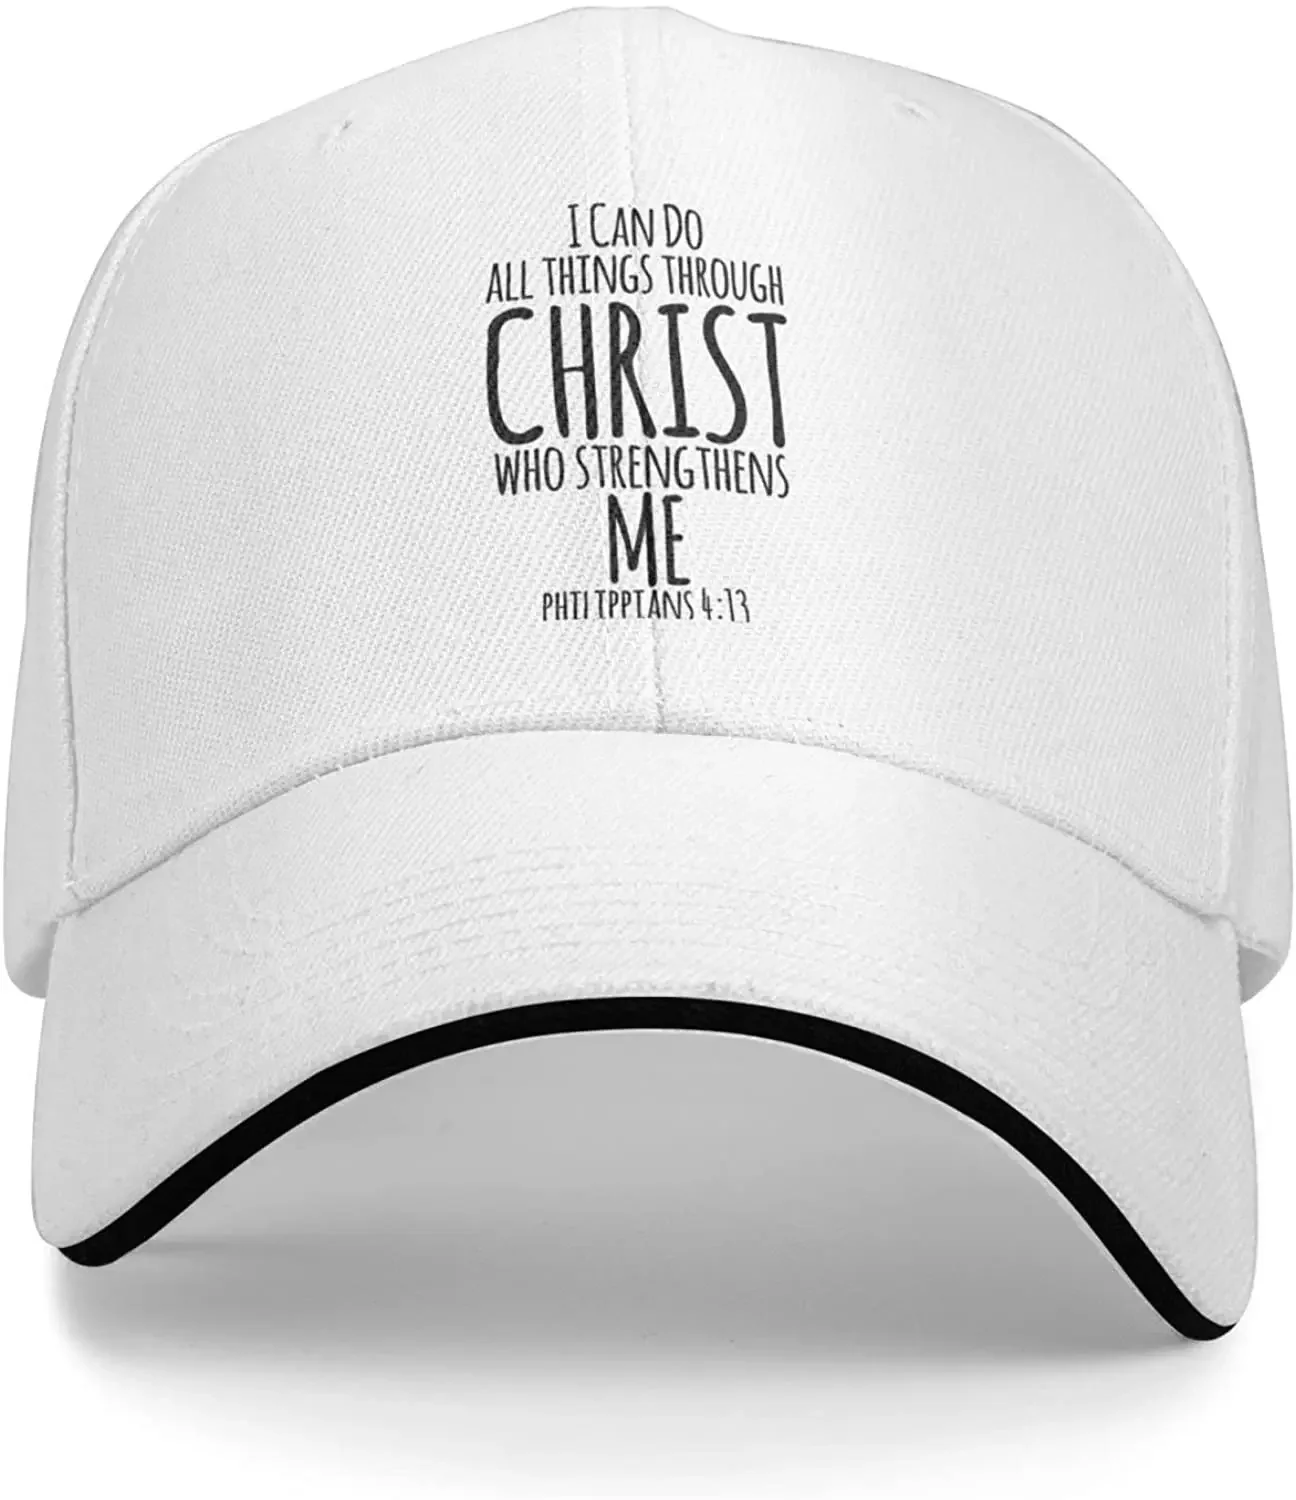 

Бейсболка с надписью «Я могу все делать через Христа», бейсболки с христианскими богами для мужчин и женщин, шапка с шариками, Регулируемая Кепка-тракер, белая Ковбойская шапка